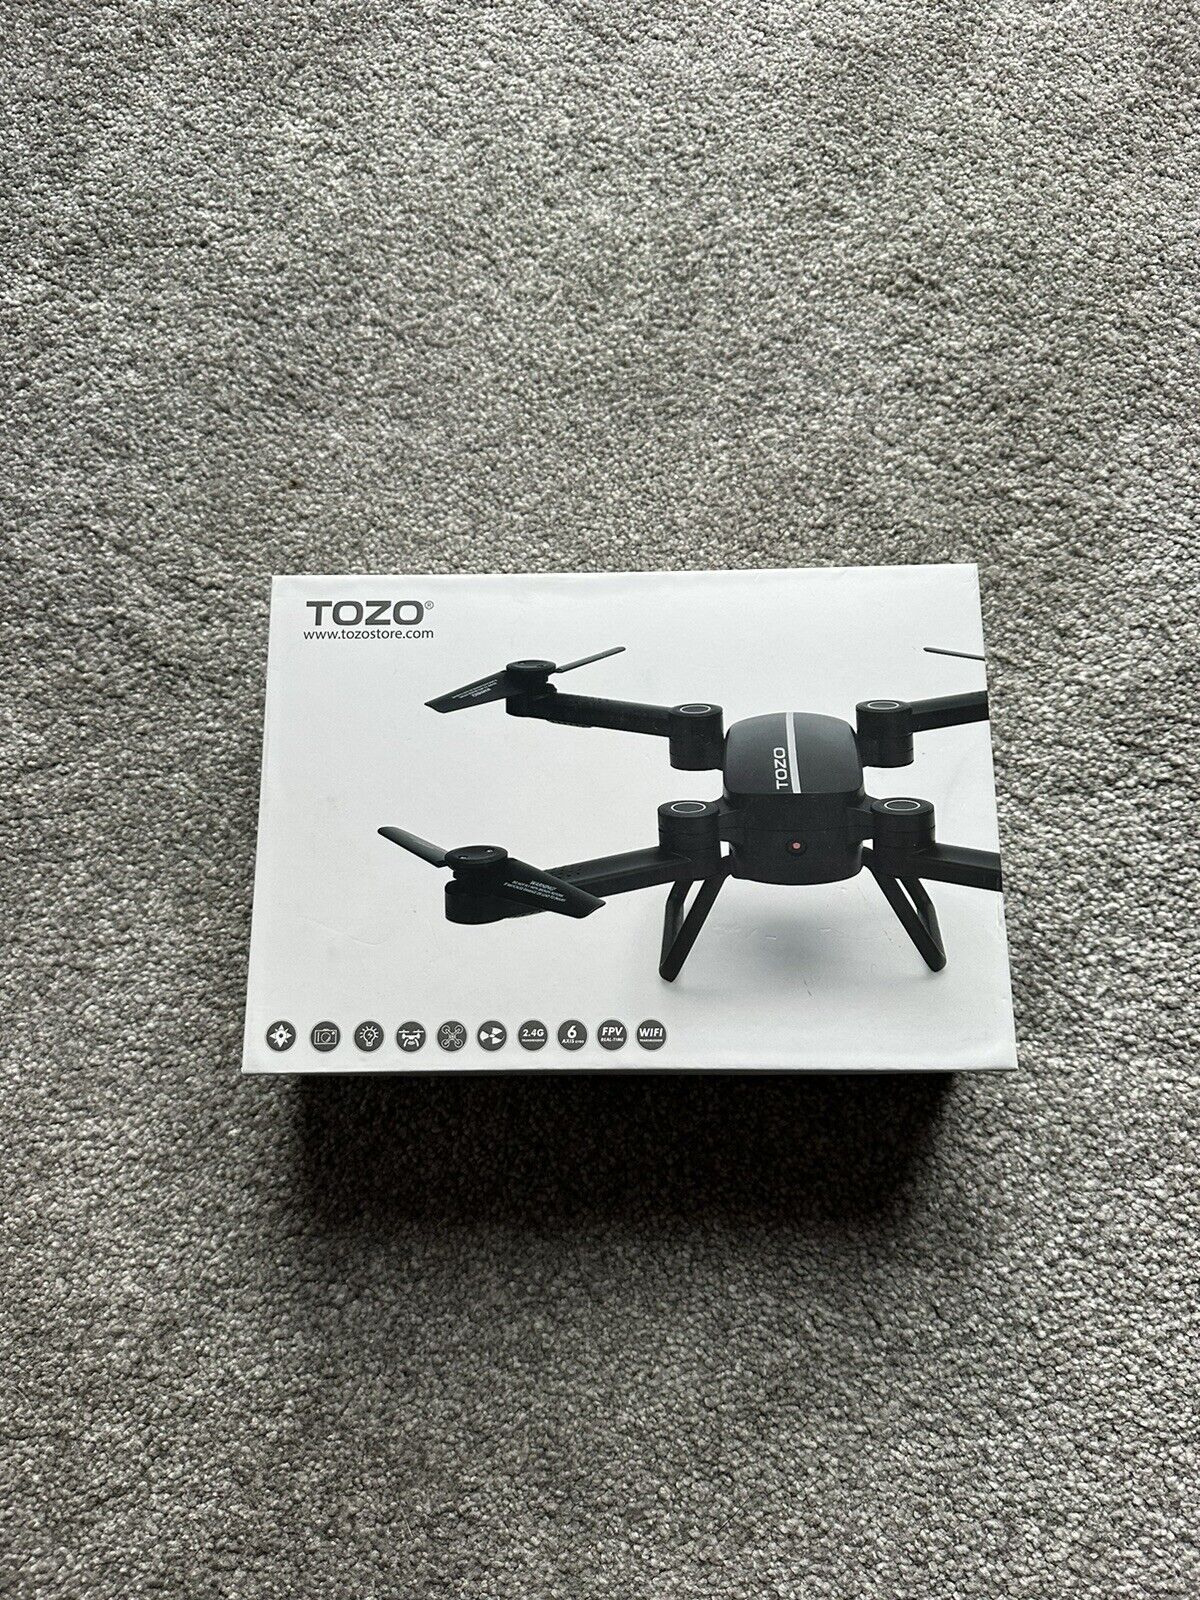 TOZO DRONE